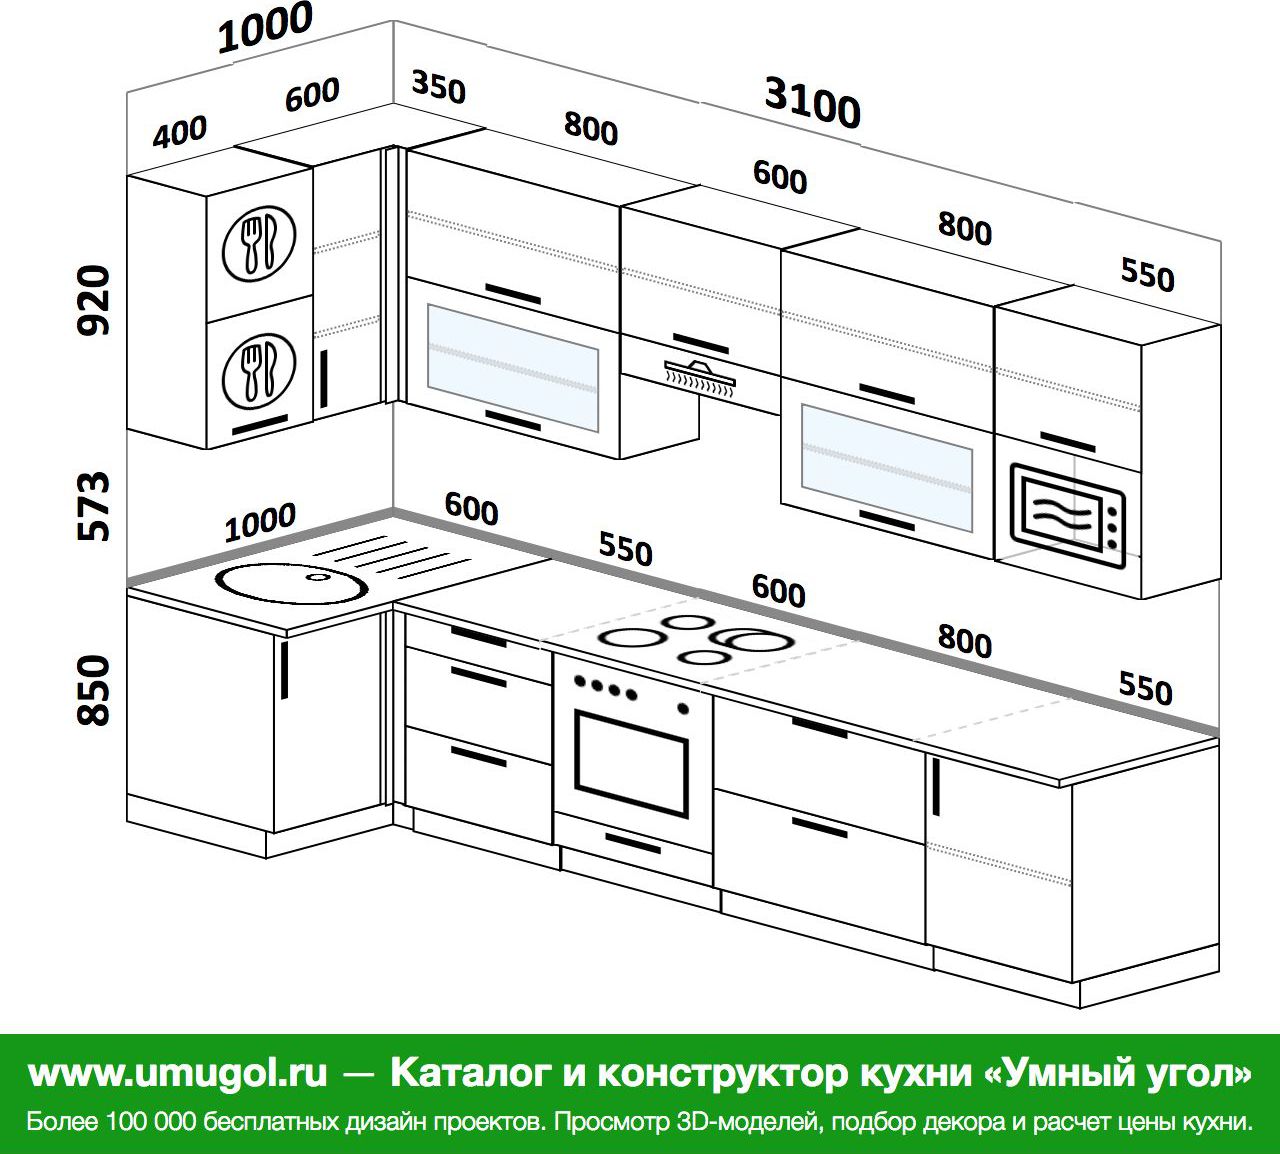 Планировка кухонного гарнитура конструктор